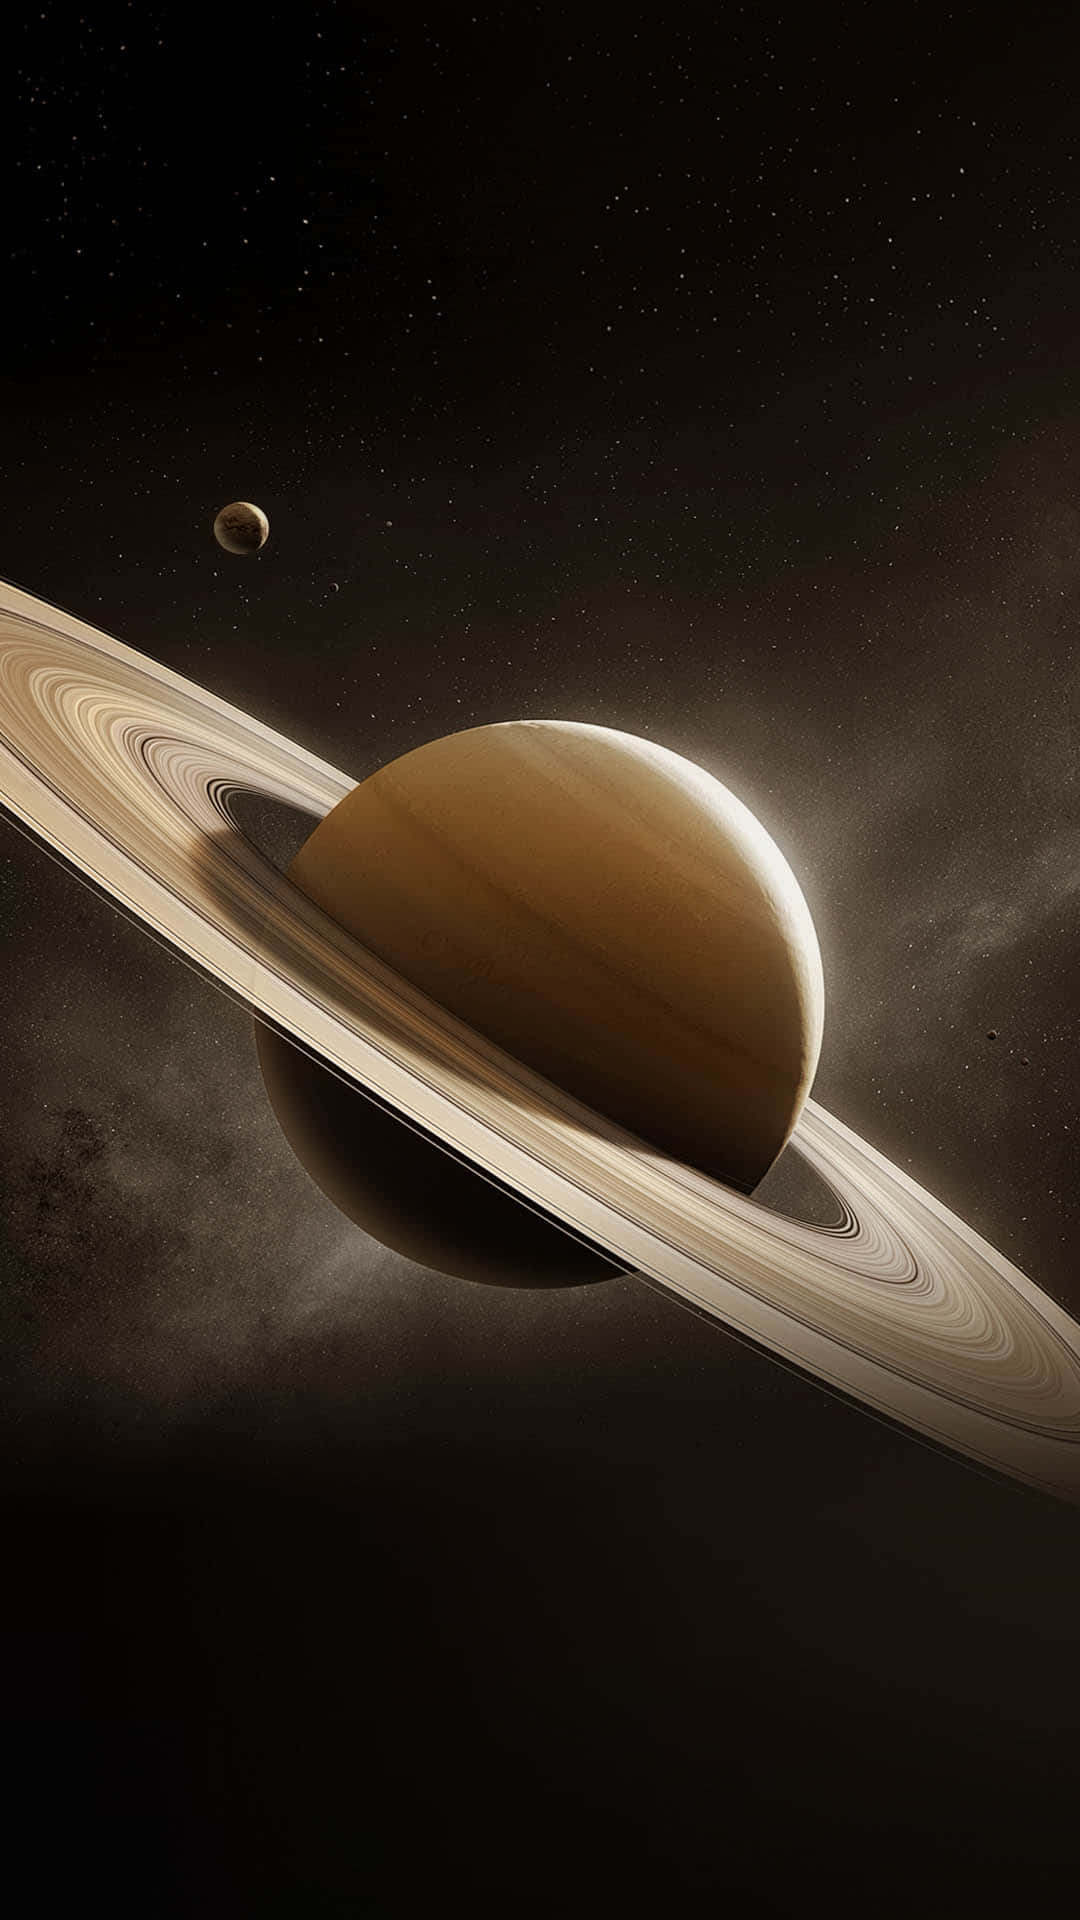 Asombrosavista De Saturno En El Espacio.